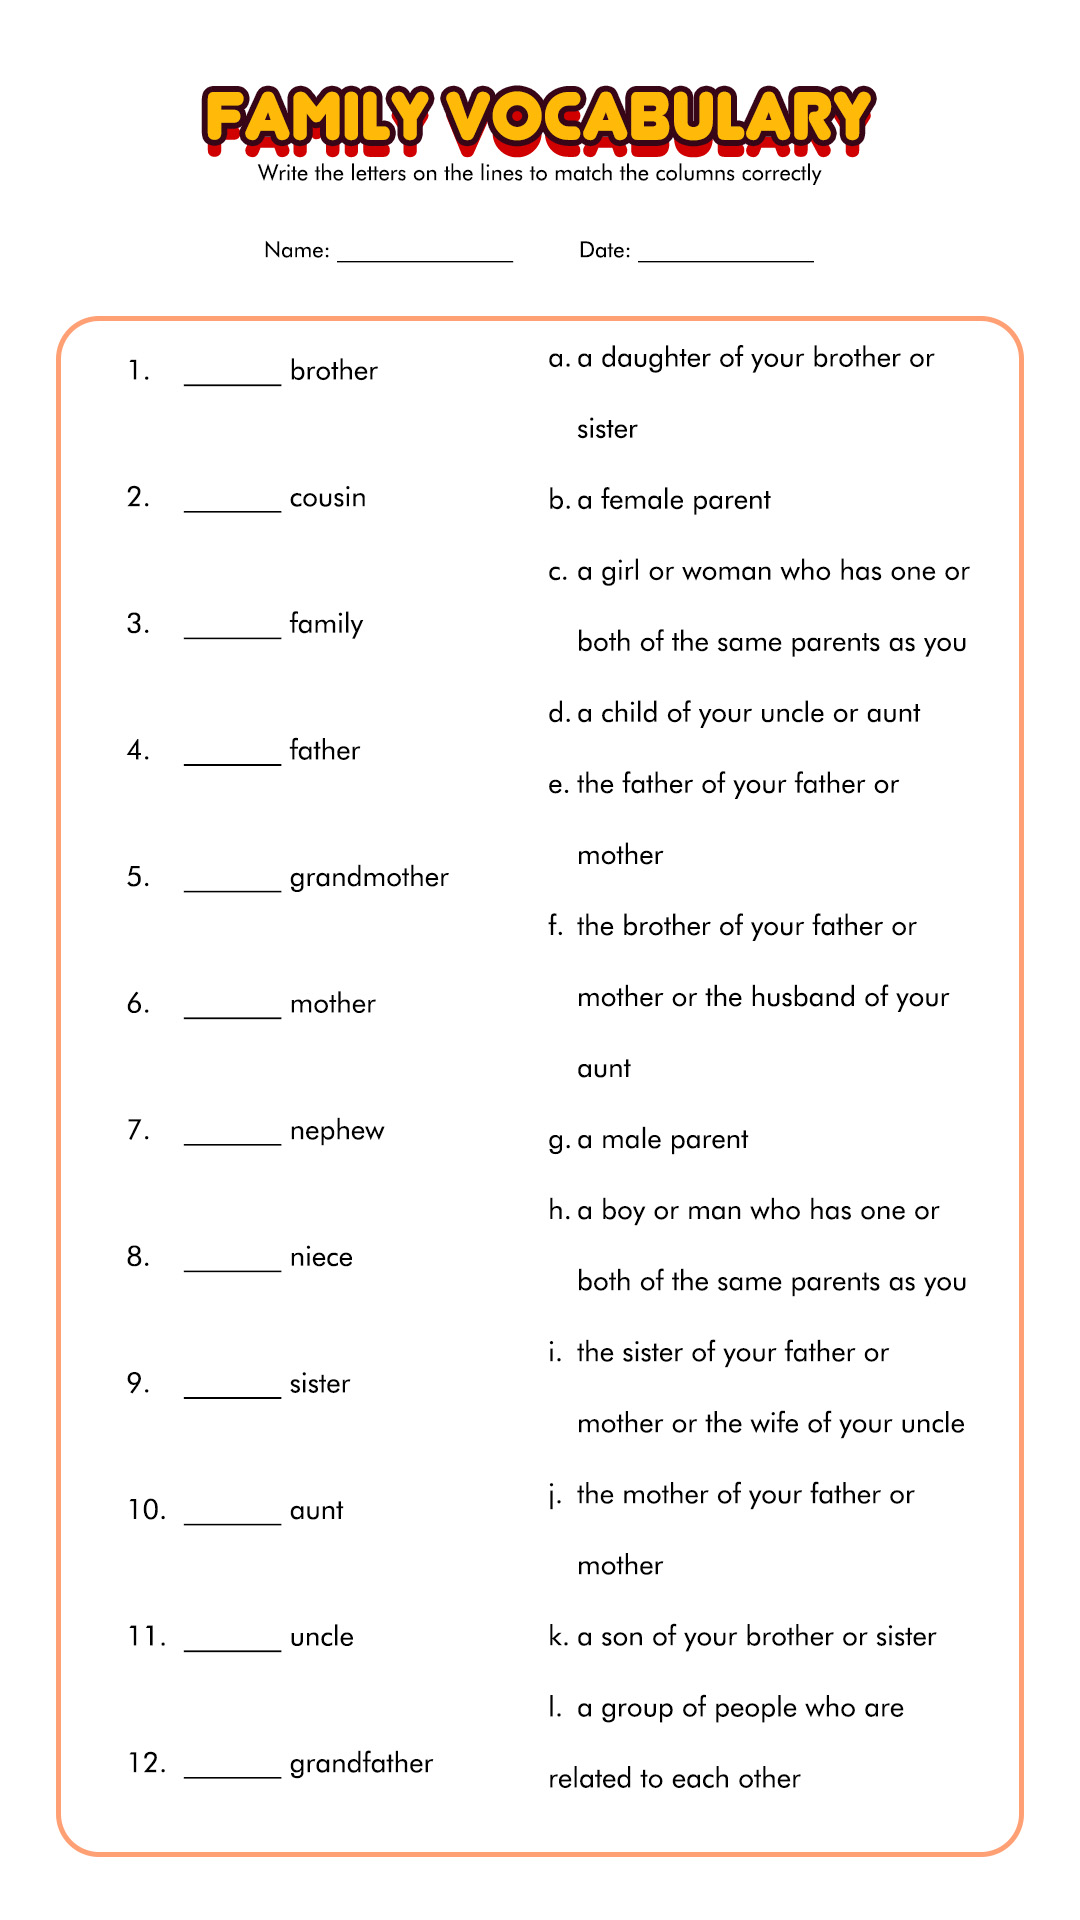 ESL Family Vocabulary Worksheets Image